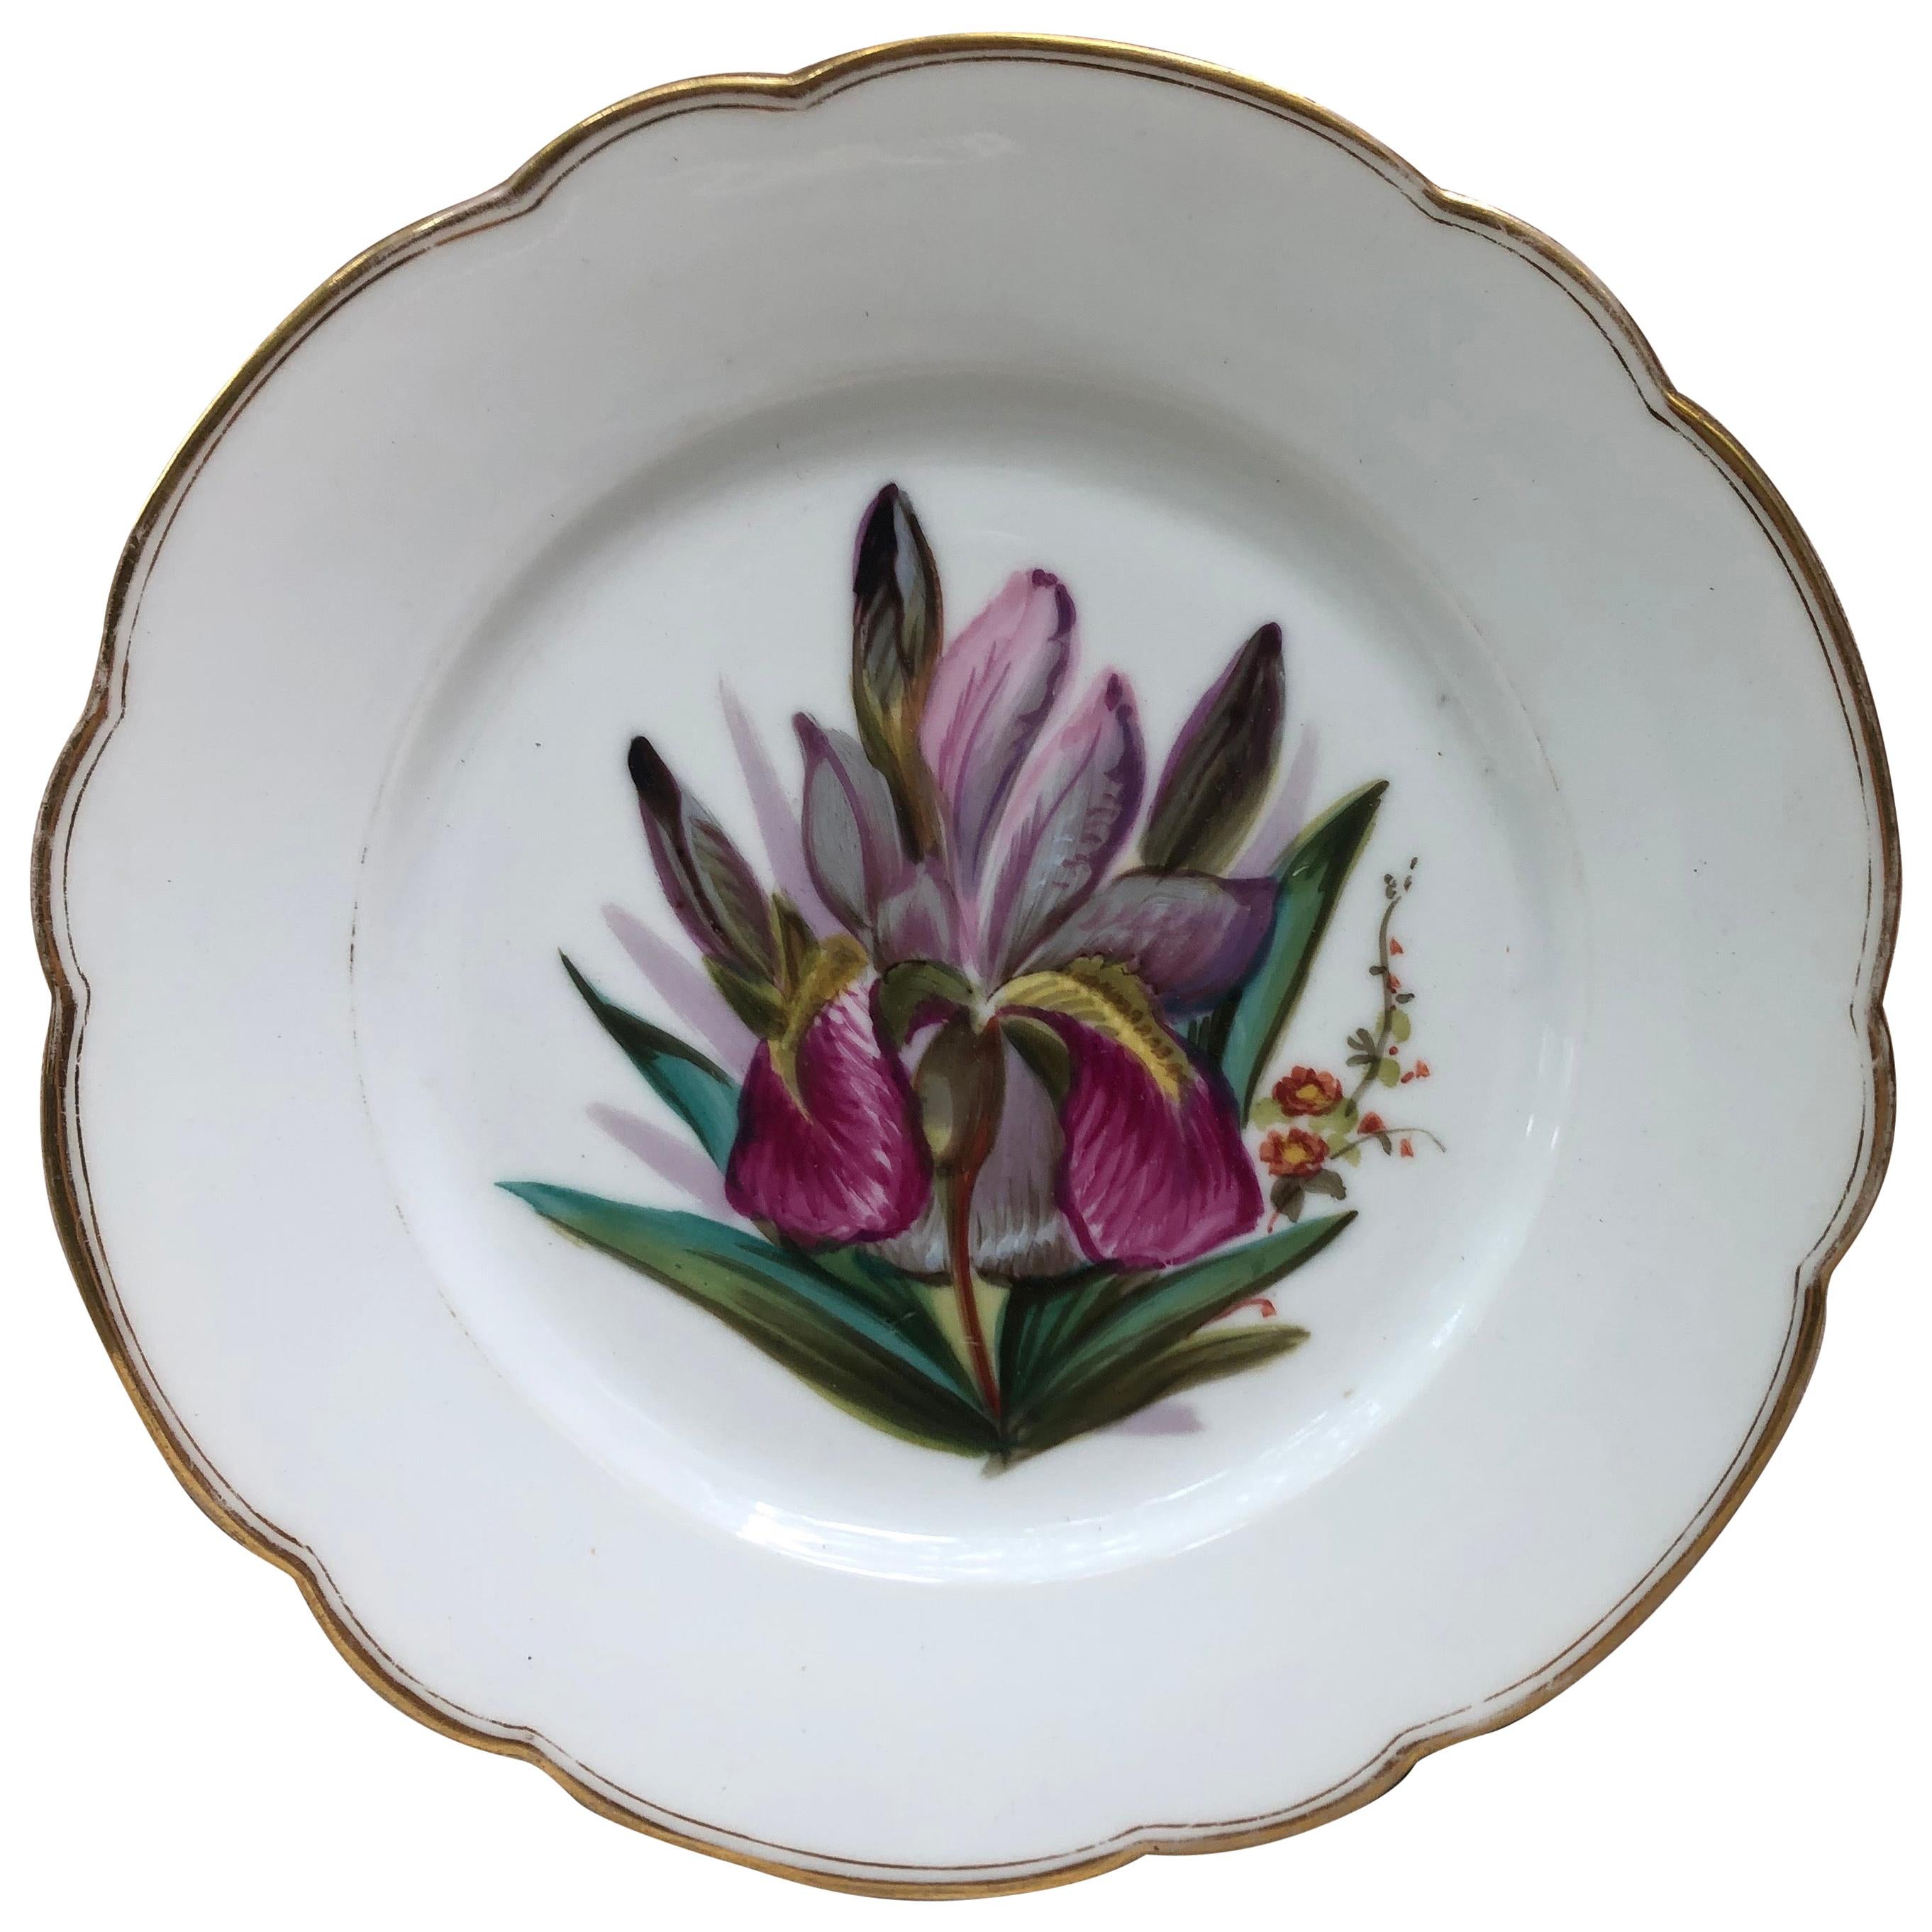 Assiette à iris en porcelaine française, vers 1850